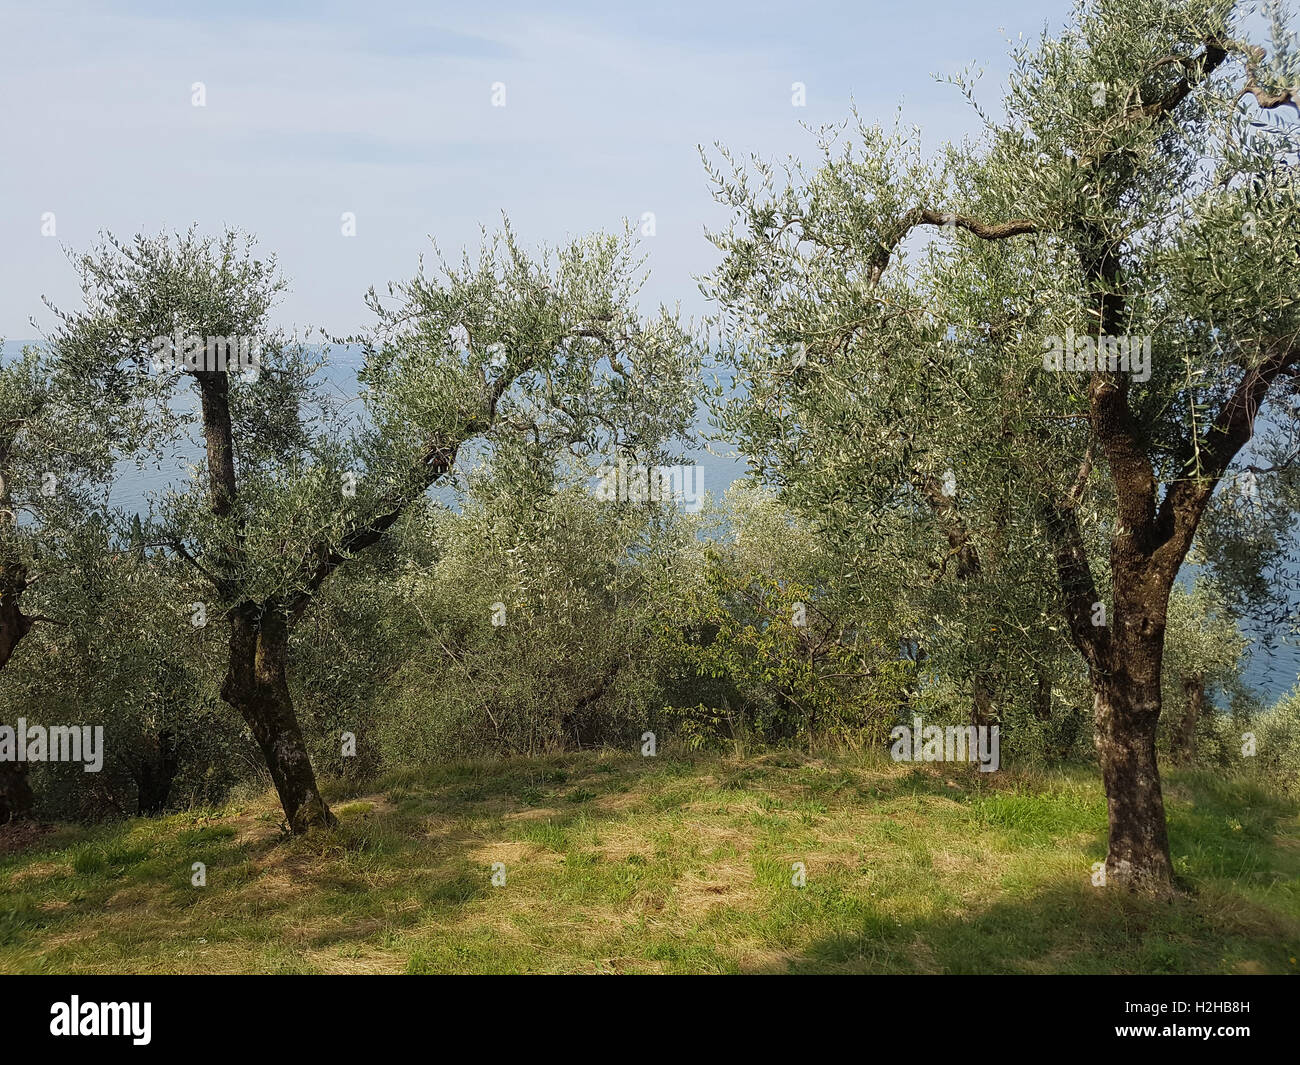 Oliven; Olivenbaum; Olea europaea Foto Stock